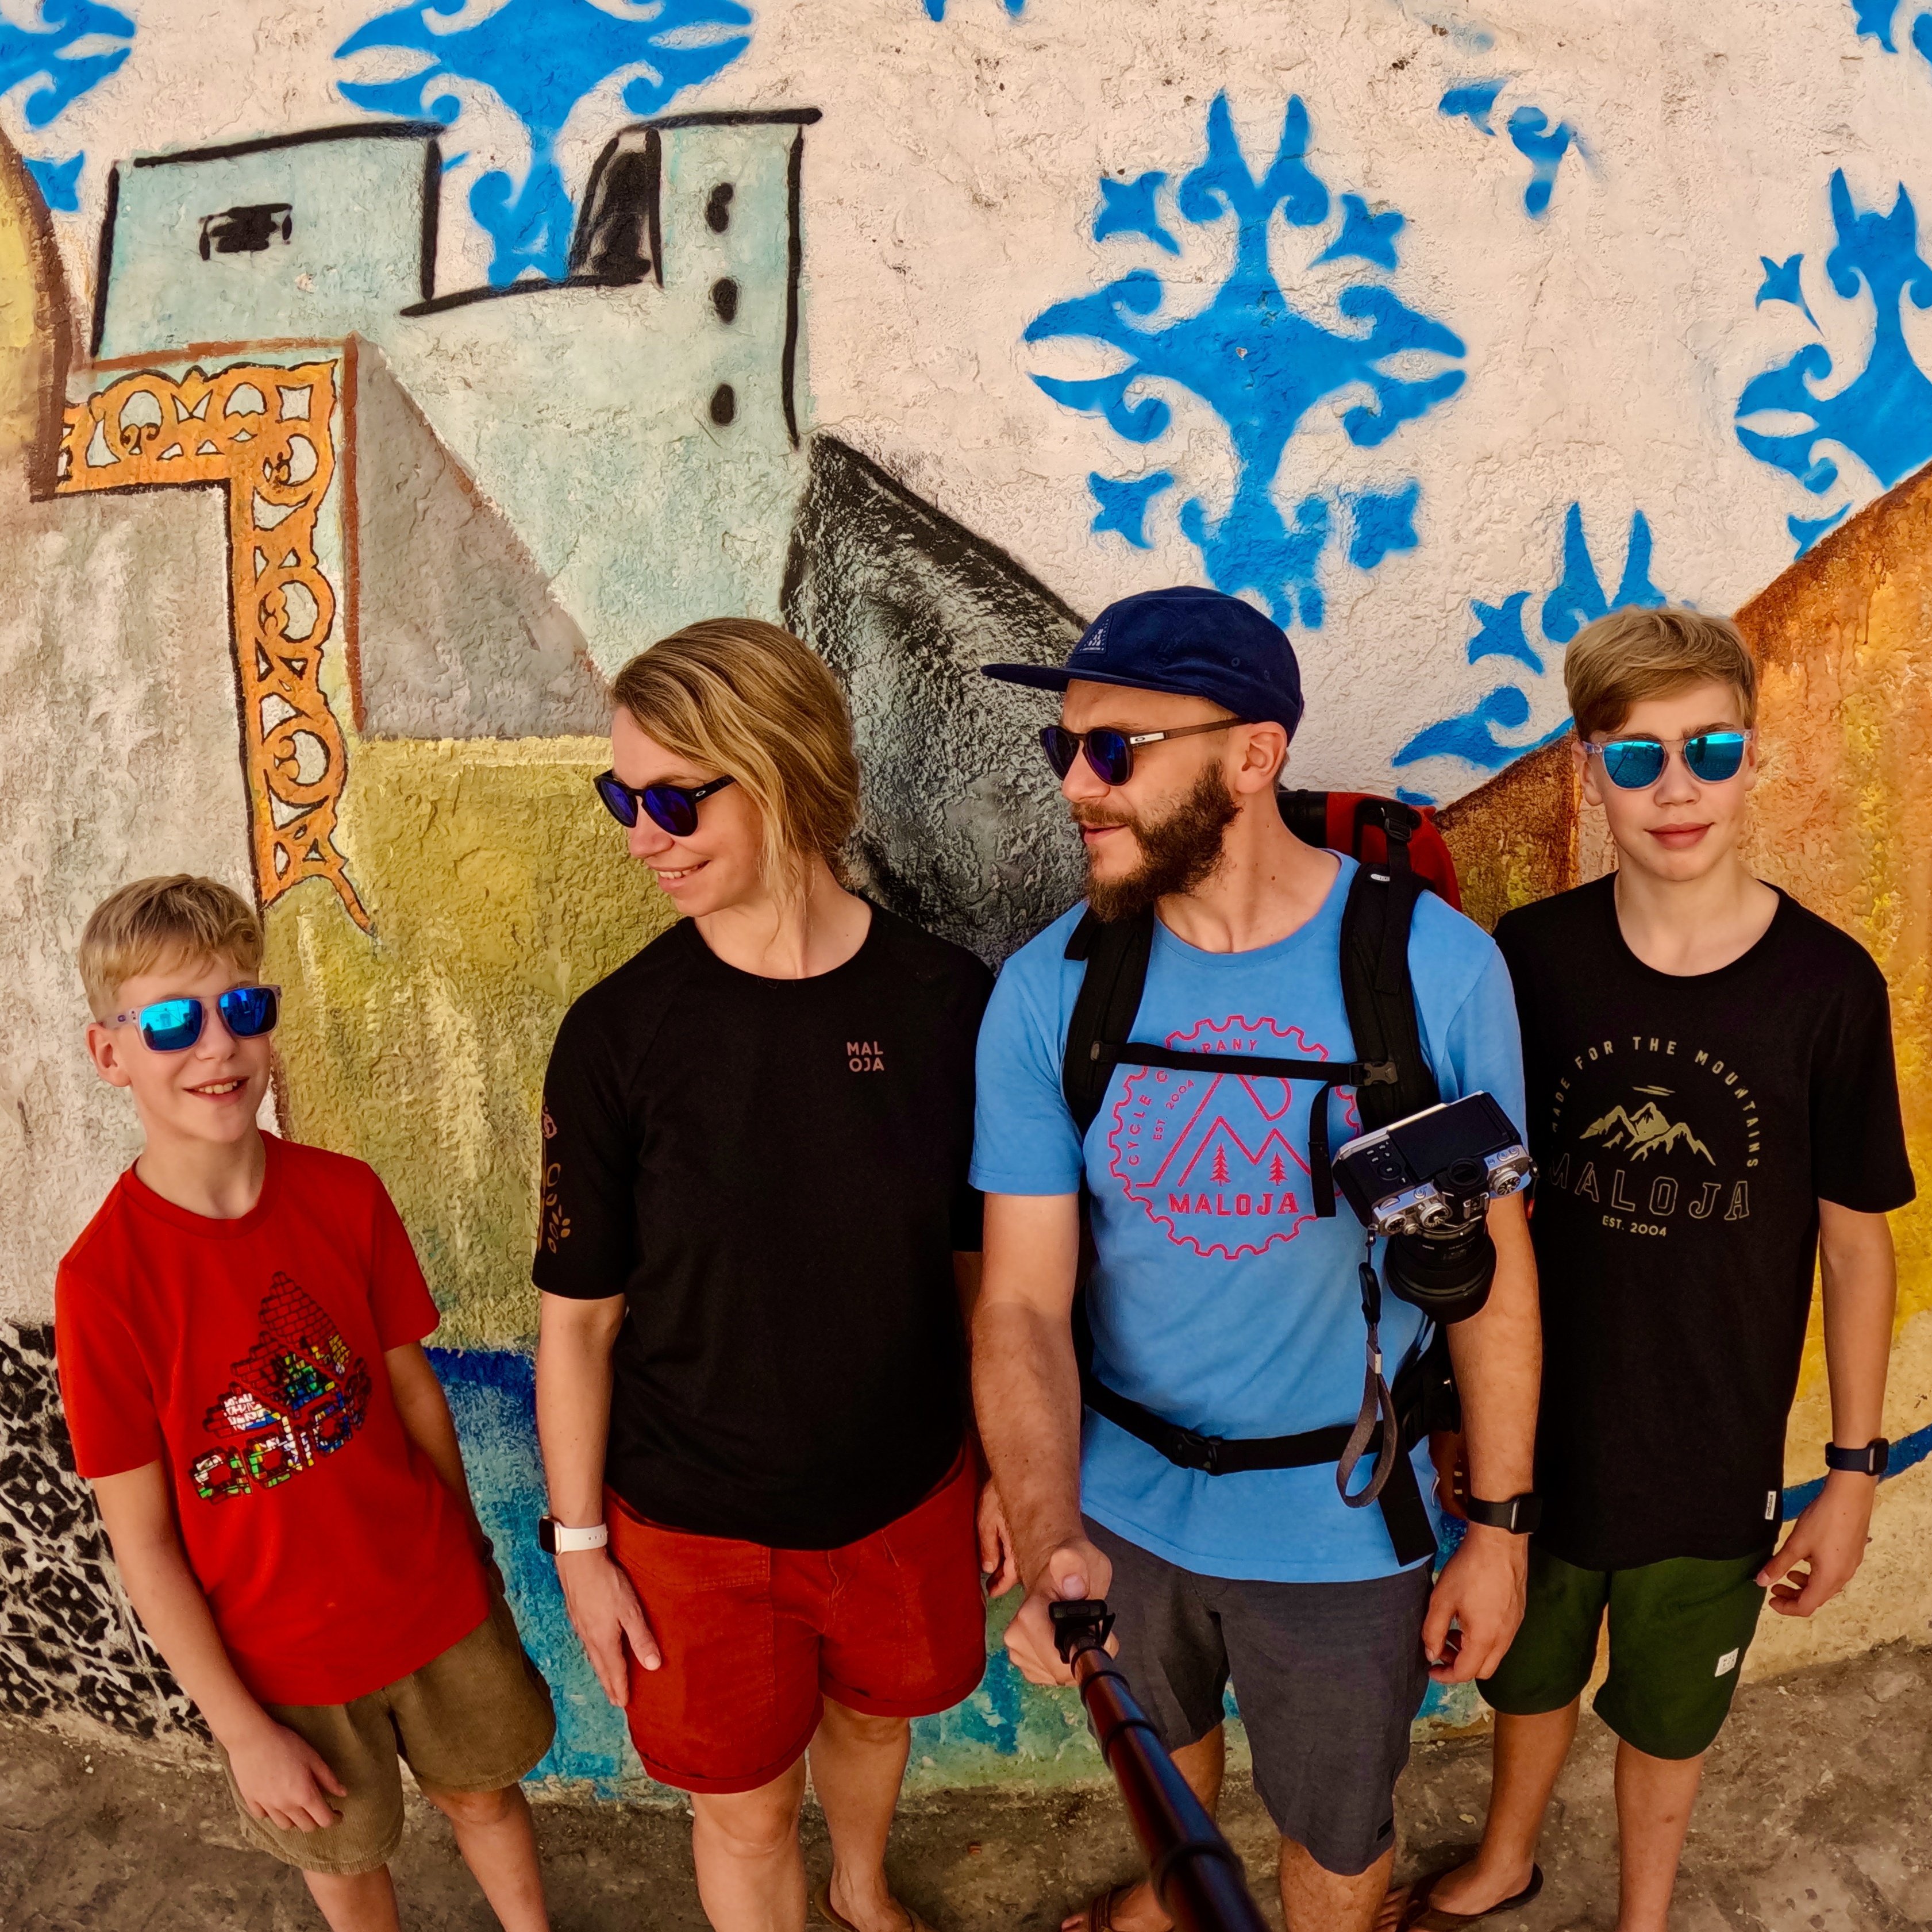 Tunesien for family - Tunesien mit Kindern - Familienfoto vor bunter Wand